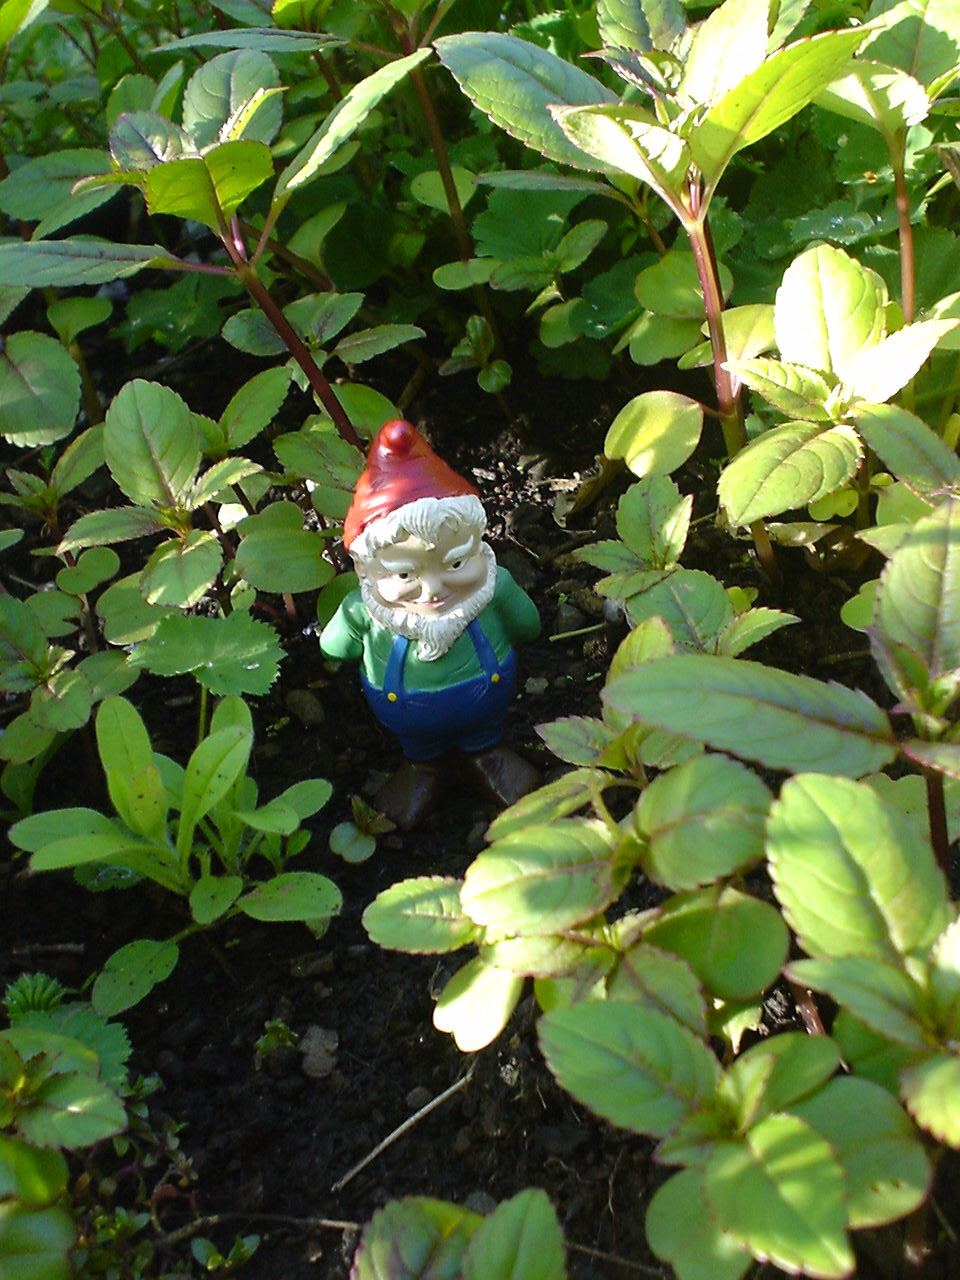 Description Small garden gnome.jpg